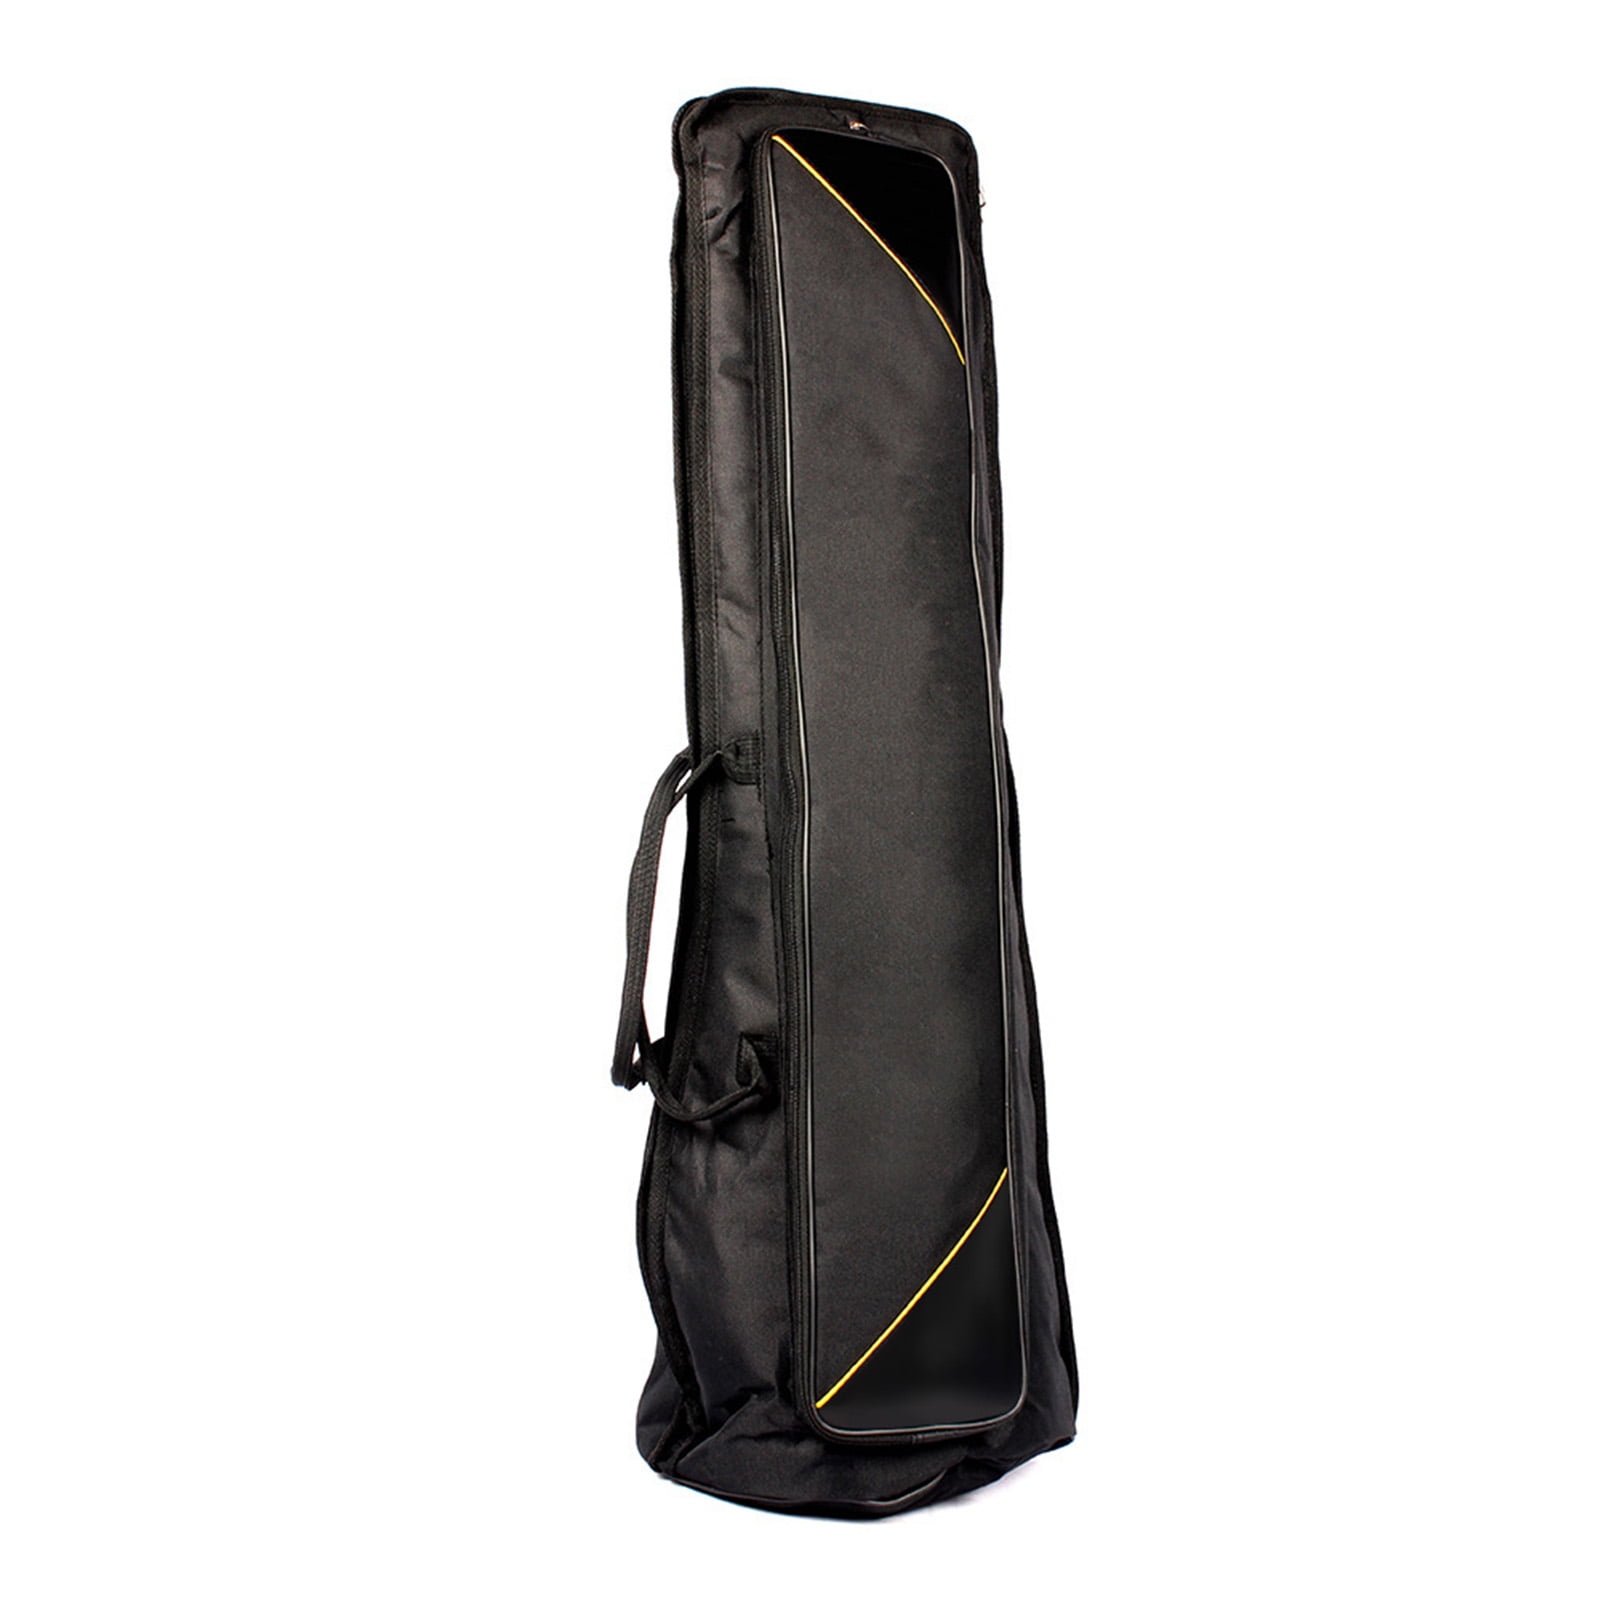 600D Water-Resistant Trombone Gig Bag Oxford Cloth Backpack Adjustable Shoulder Straps Pocket 5mm Cotton Padded for Alto/Tenor Trombone